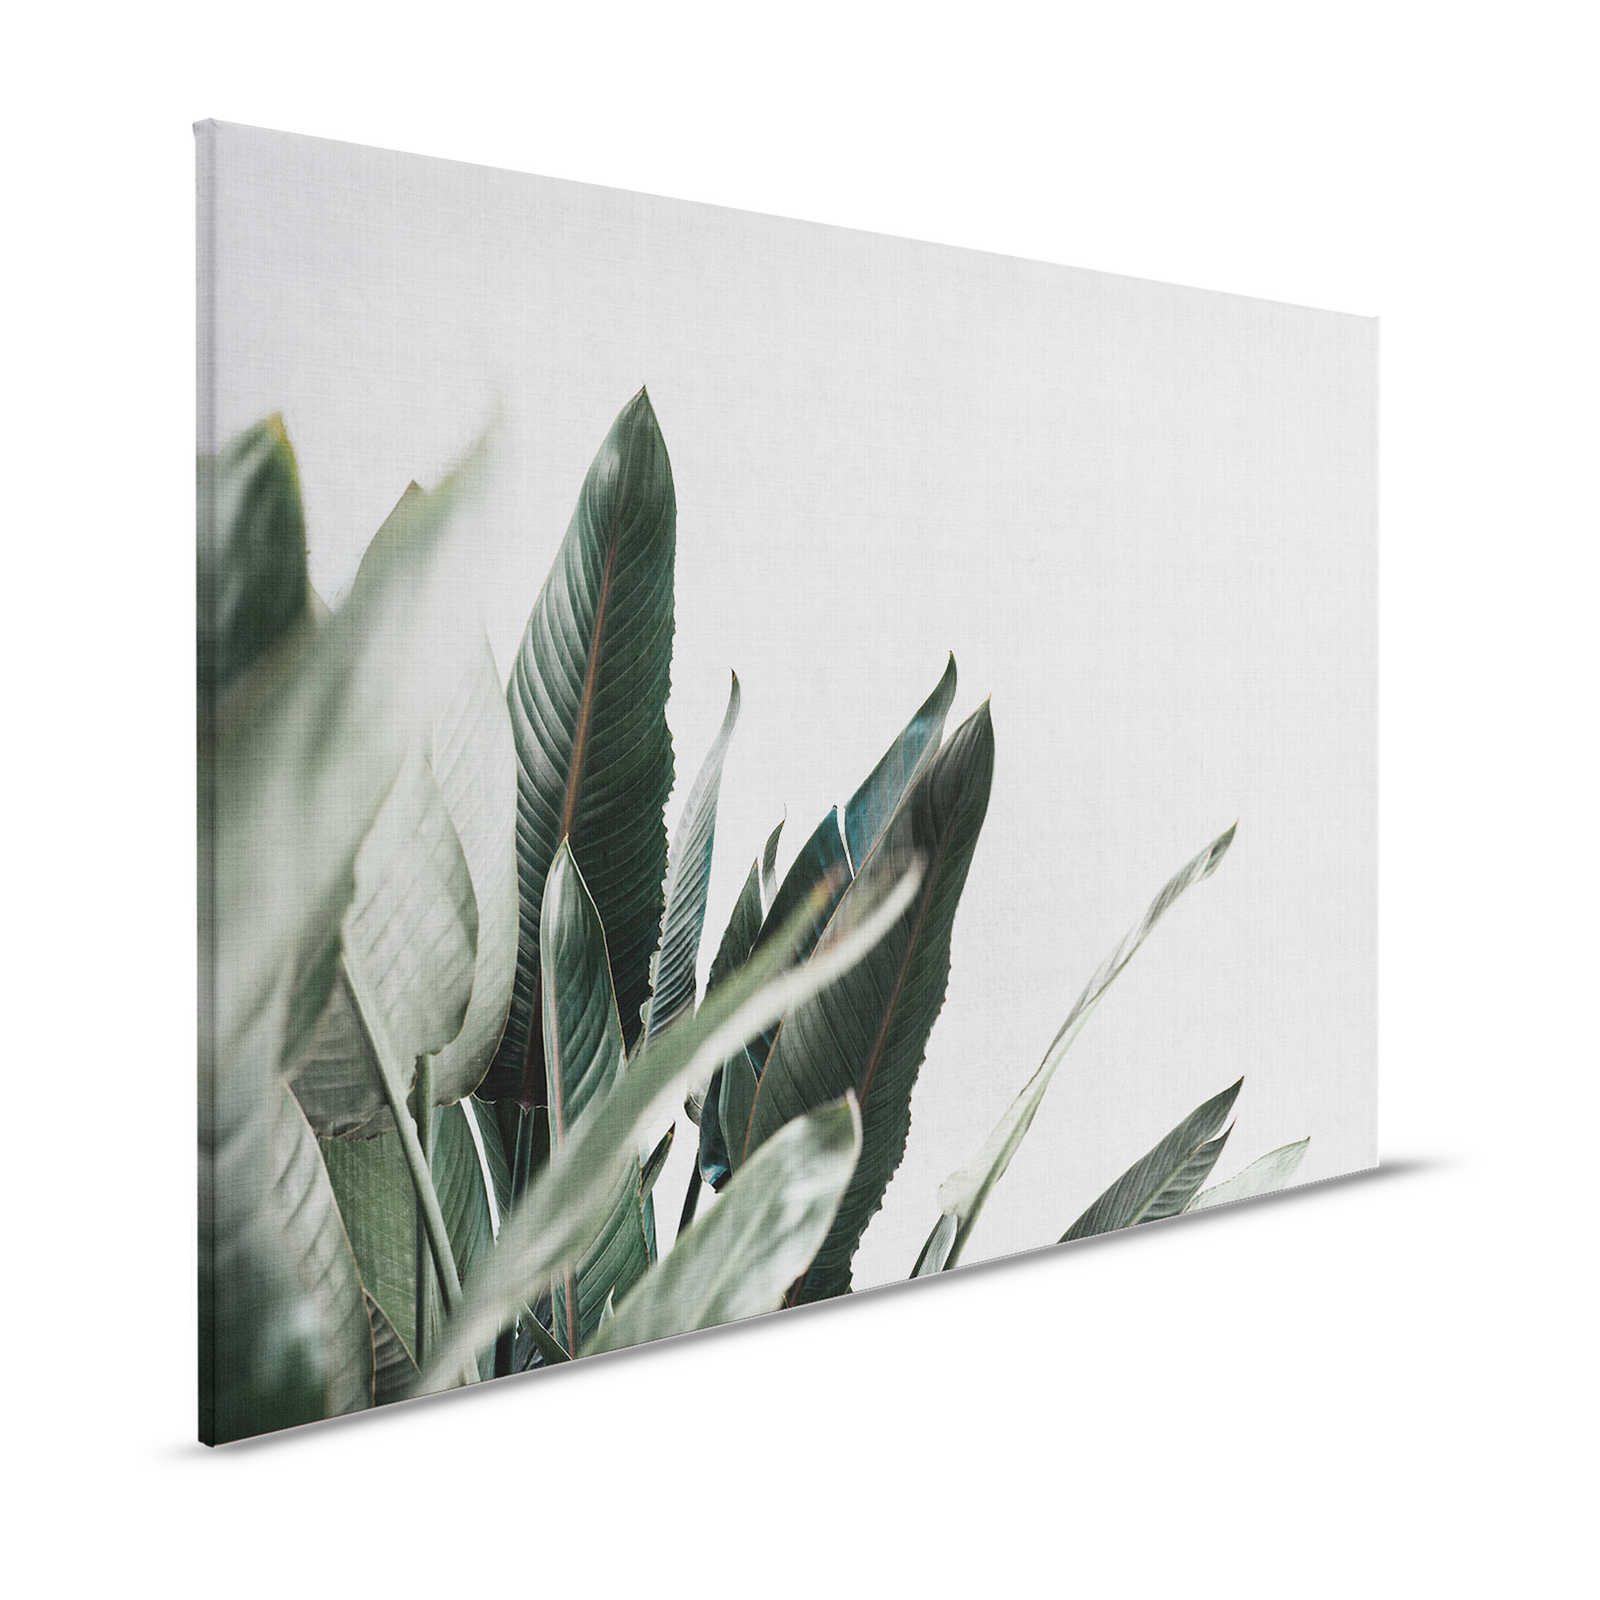 Giungla urbana 1 - Quadro su tela con foglie di palma in lino naturale - 1,20 m x 0,80 m
